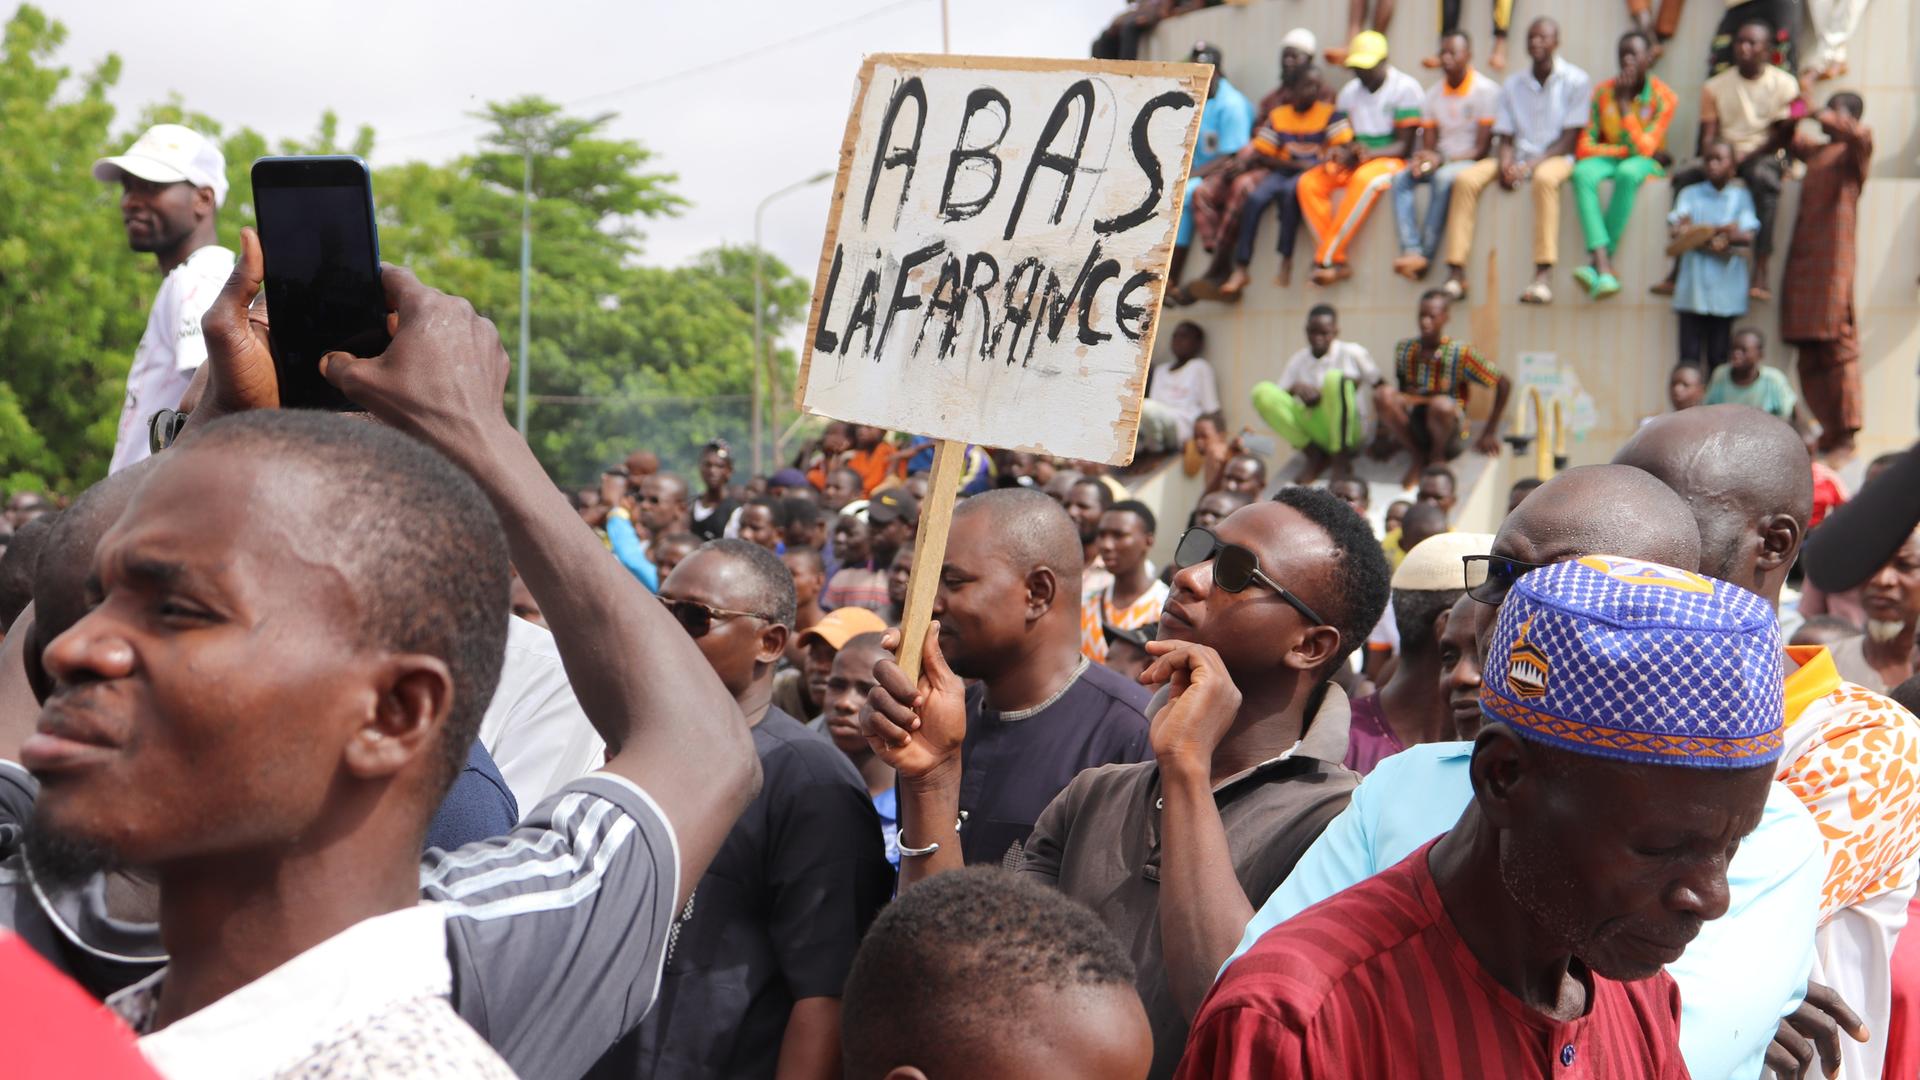 Menschen demonstrieren in Nigers Hauptstadt Niamey, um damit ihre Unterstützung für die Putschisten zu zeigen. Ein junger Mann hält dabei ein Schild mit der Aufschrift «A bas la France» (Nieder mit Frankreich) hoch. Bei der Demonstration wurden auch Parolen gegen die ehemalige Kolonialmacht Frankreich gerufen